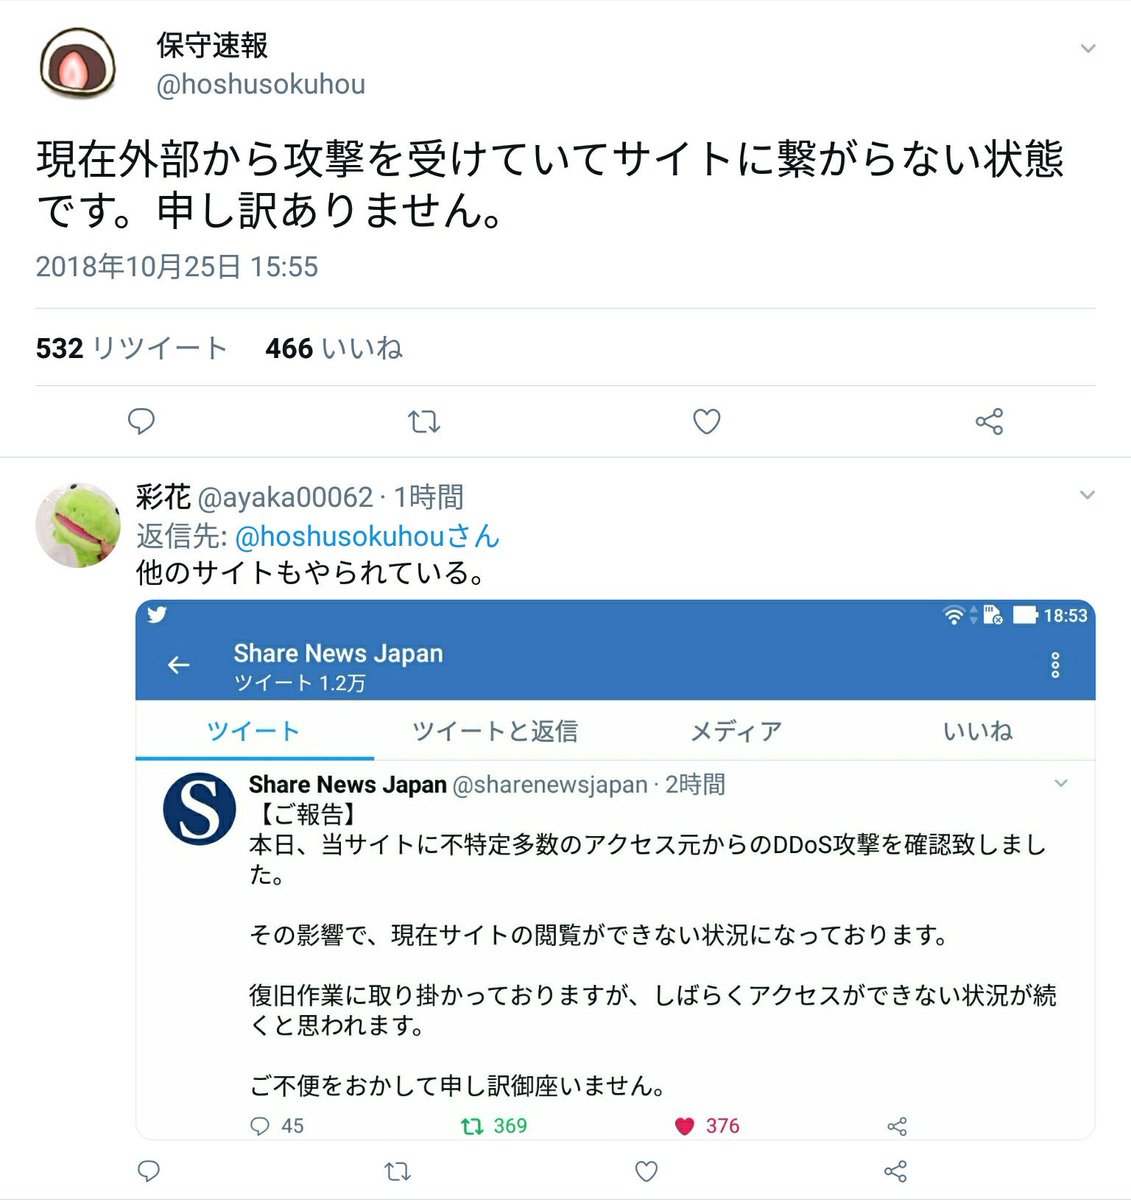 渡部陽一さんのフェイクニュース拡散してた Share News Japan とかいうサイト Dos攻撃受けて見えないの笑う その他にも 保守速報 アノニマス ポスト もえるあじあ がddos攻撃被害か Togetter